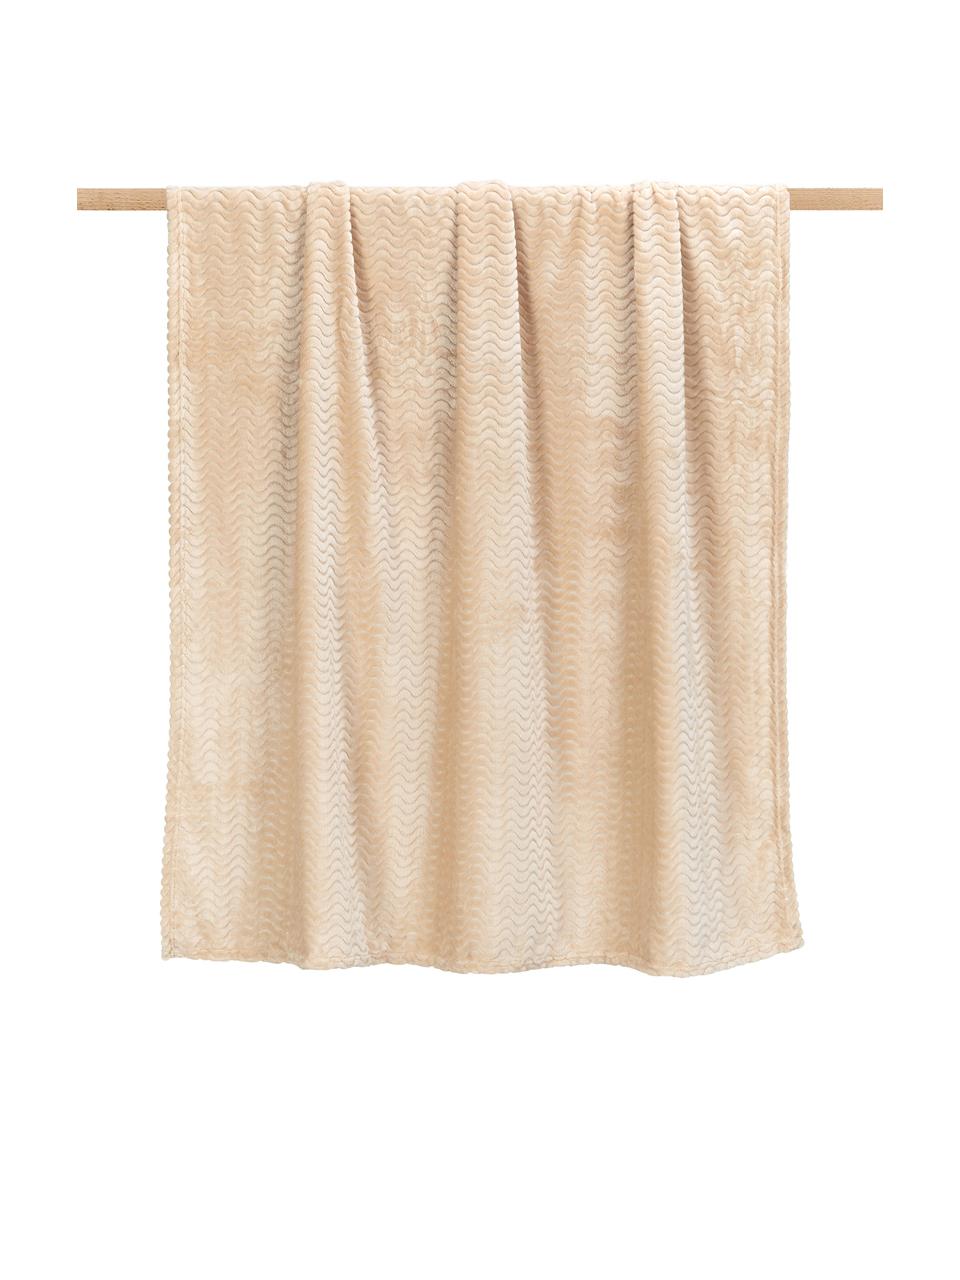 Zachte plaid Agnes met gestructureerd oppervlak in beige, 100% polyester, Beige, B 130 x L 170 cm